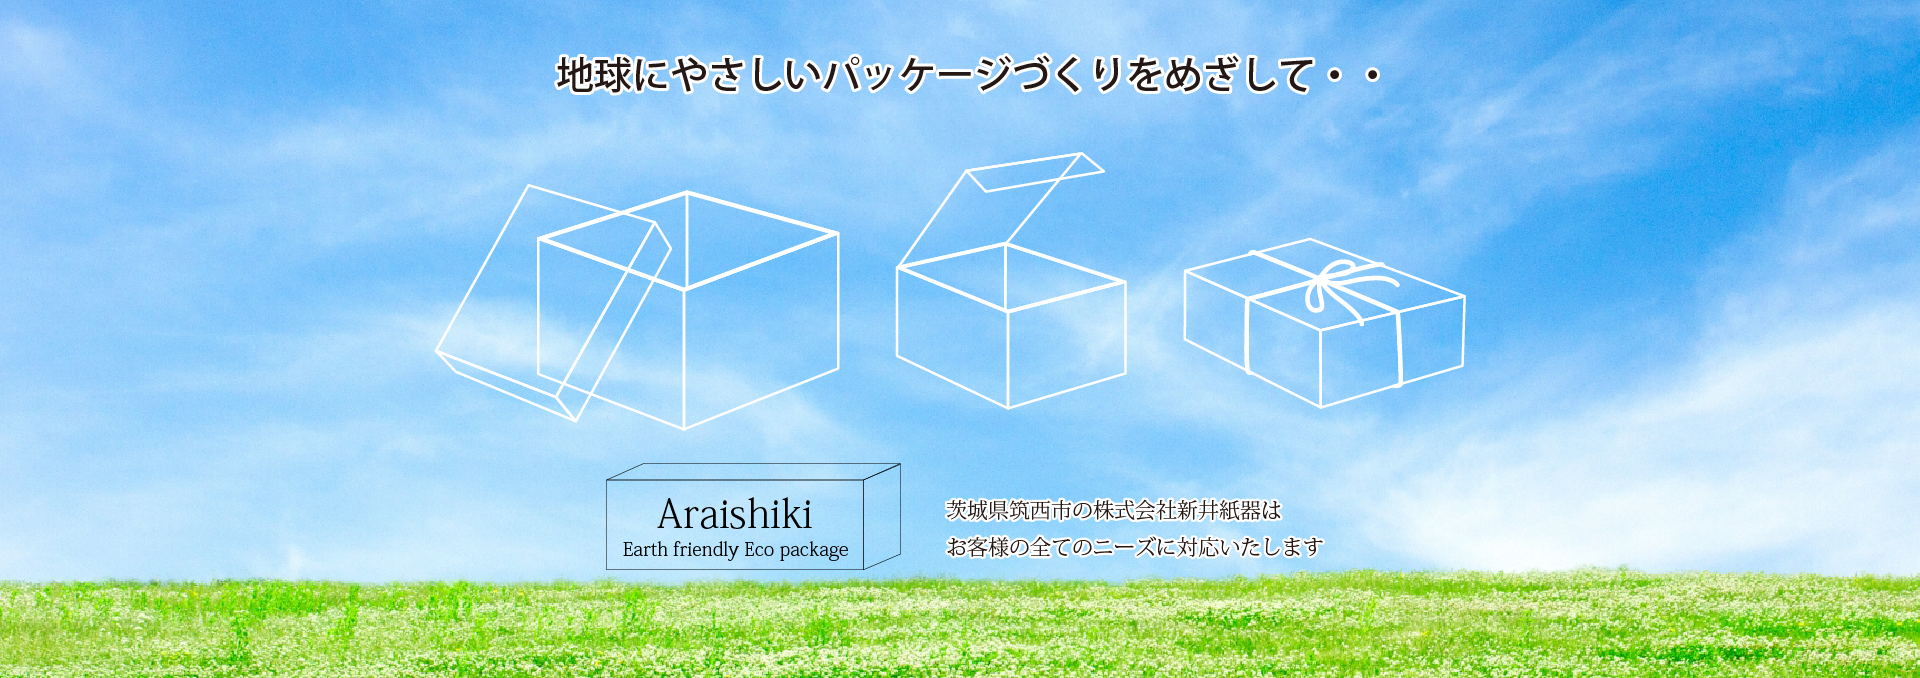 筑西市の新井紙器は、地球に優しいパッケージを目指して。